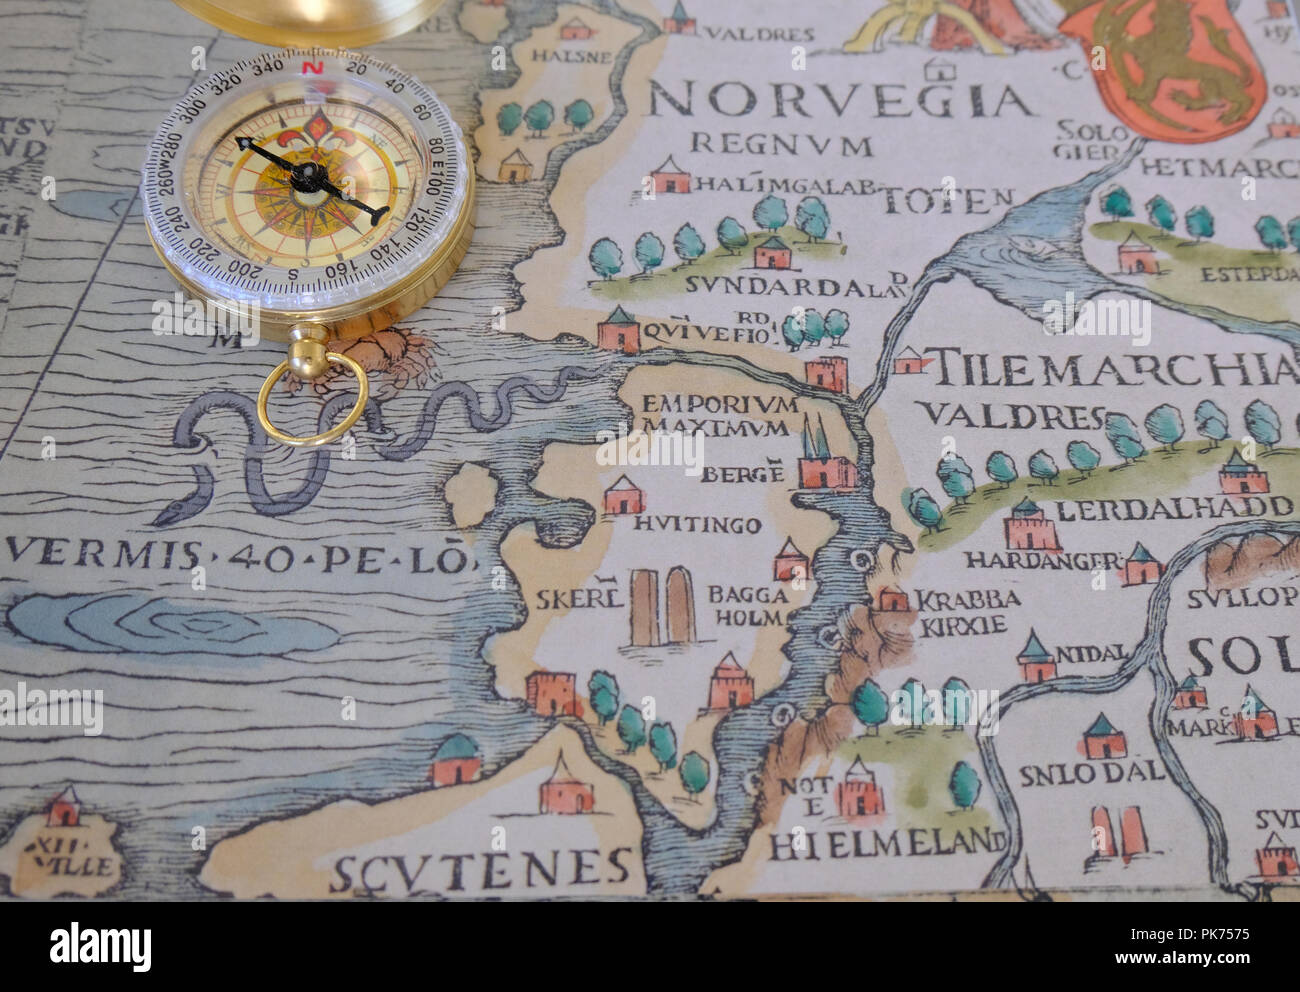 Kompass platziert auf der Vervielfältigung von Abschnitt von Olaus Magnus des 16. Jahrhunderts Marine Karte mit skandinavischen Ländern Stockfoto